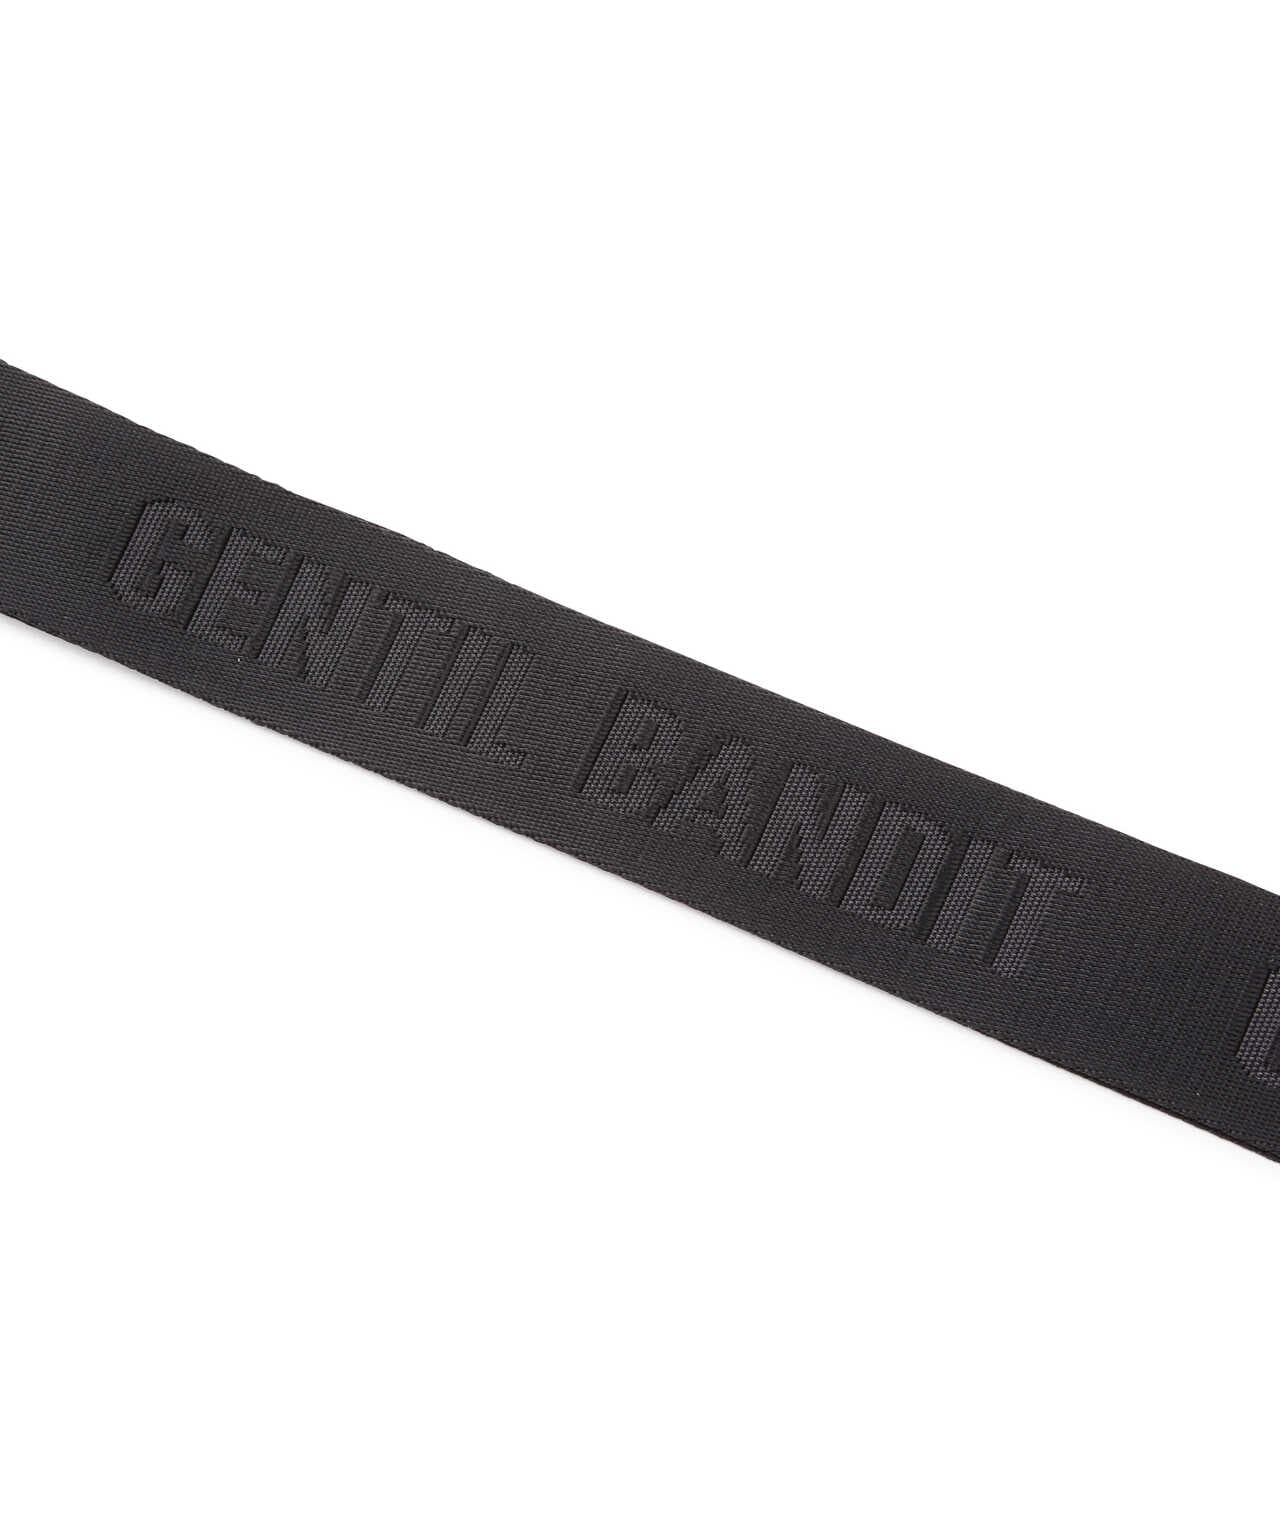 GENTIL BANDIT（ジャンティバンティ）ボディバッグ ブラックカモ